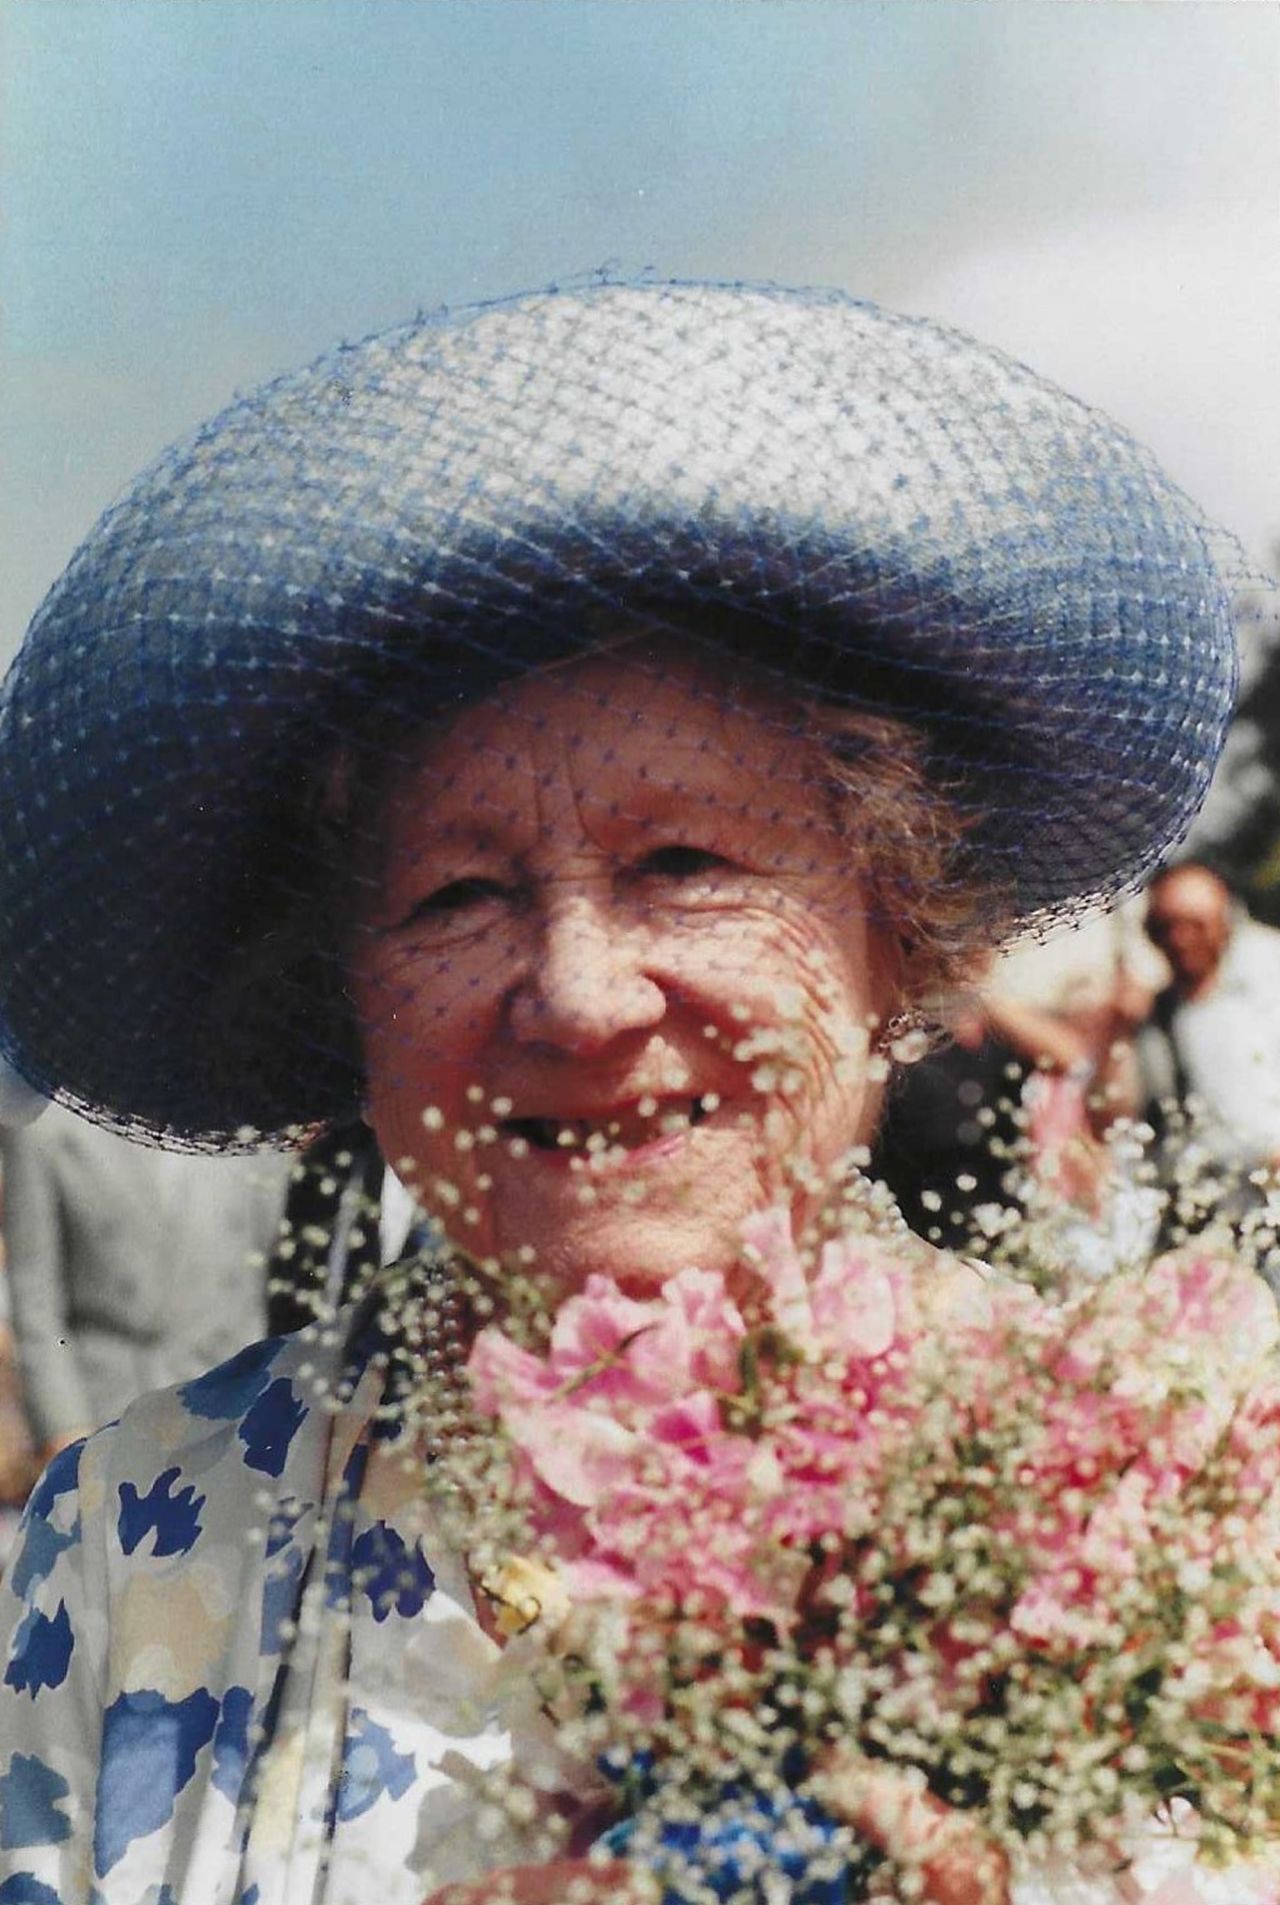 Queen Elizabeth The Queen Mother, August 1989 at the Sandringham Flower Show.